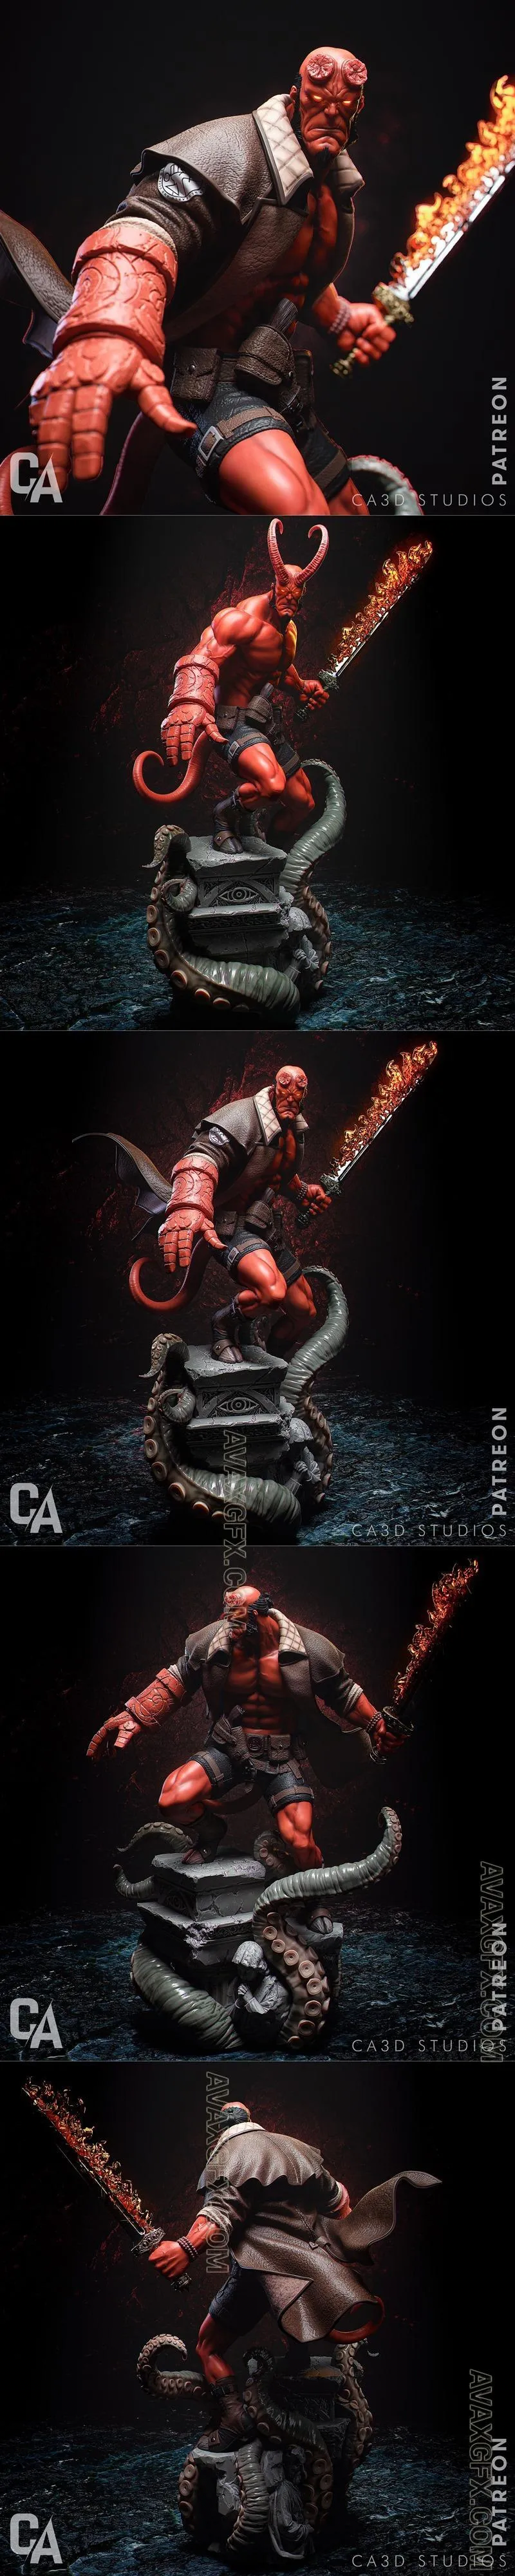 Ca 3d Studios - Hellboy - STL 3D Model